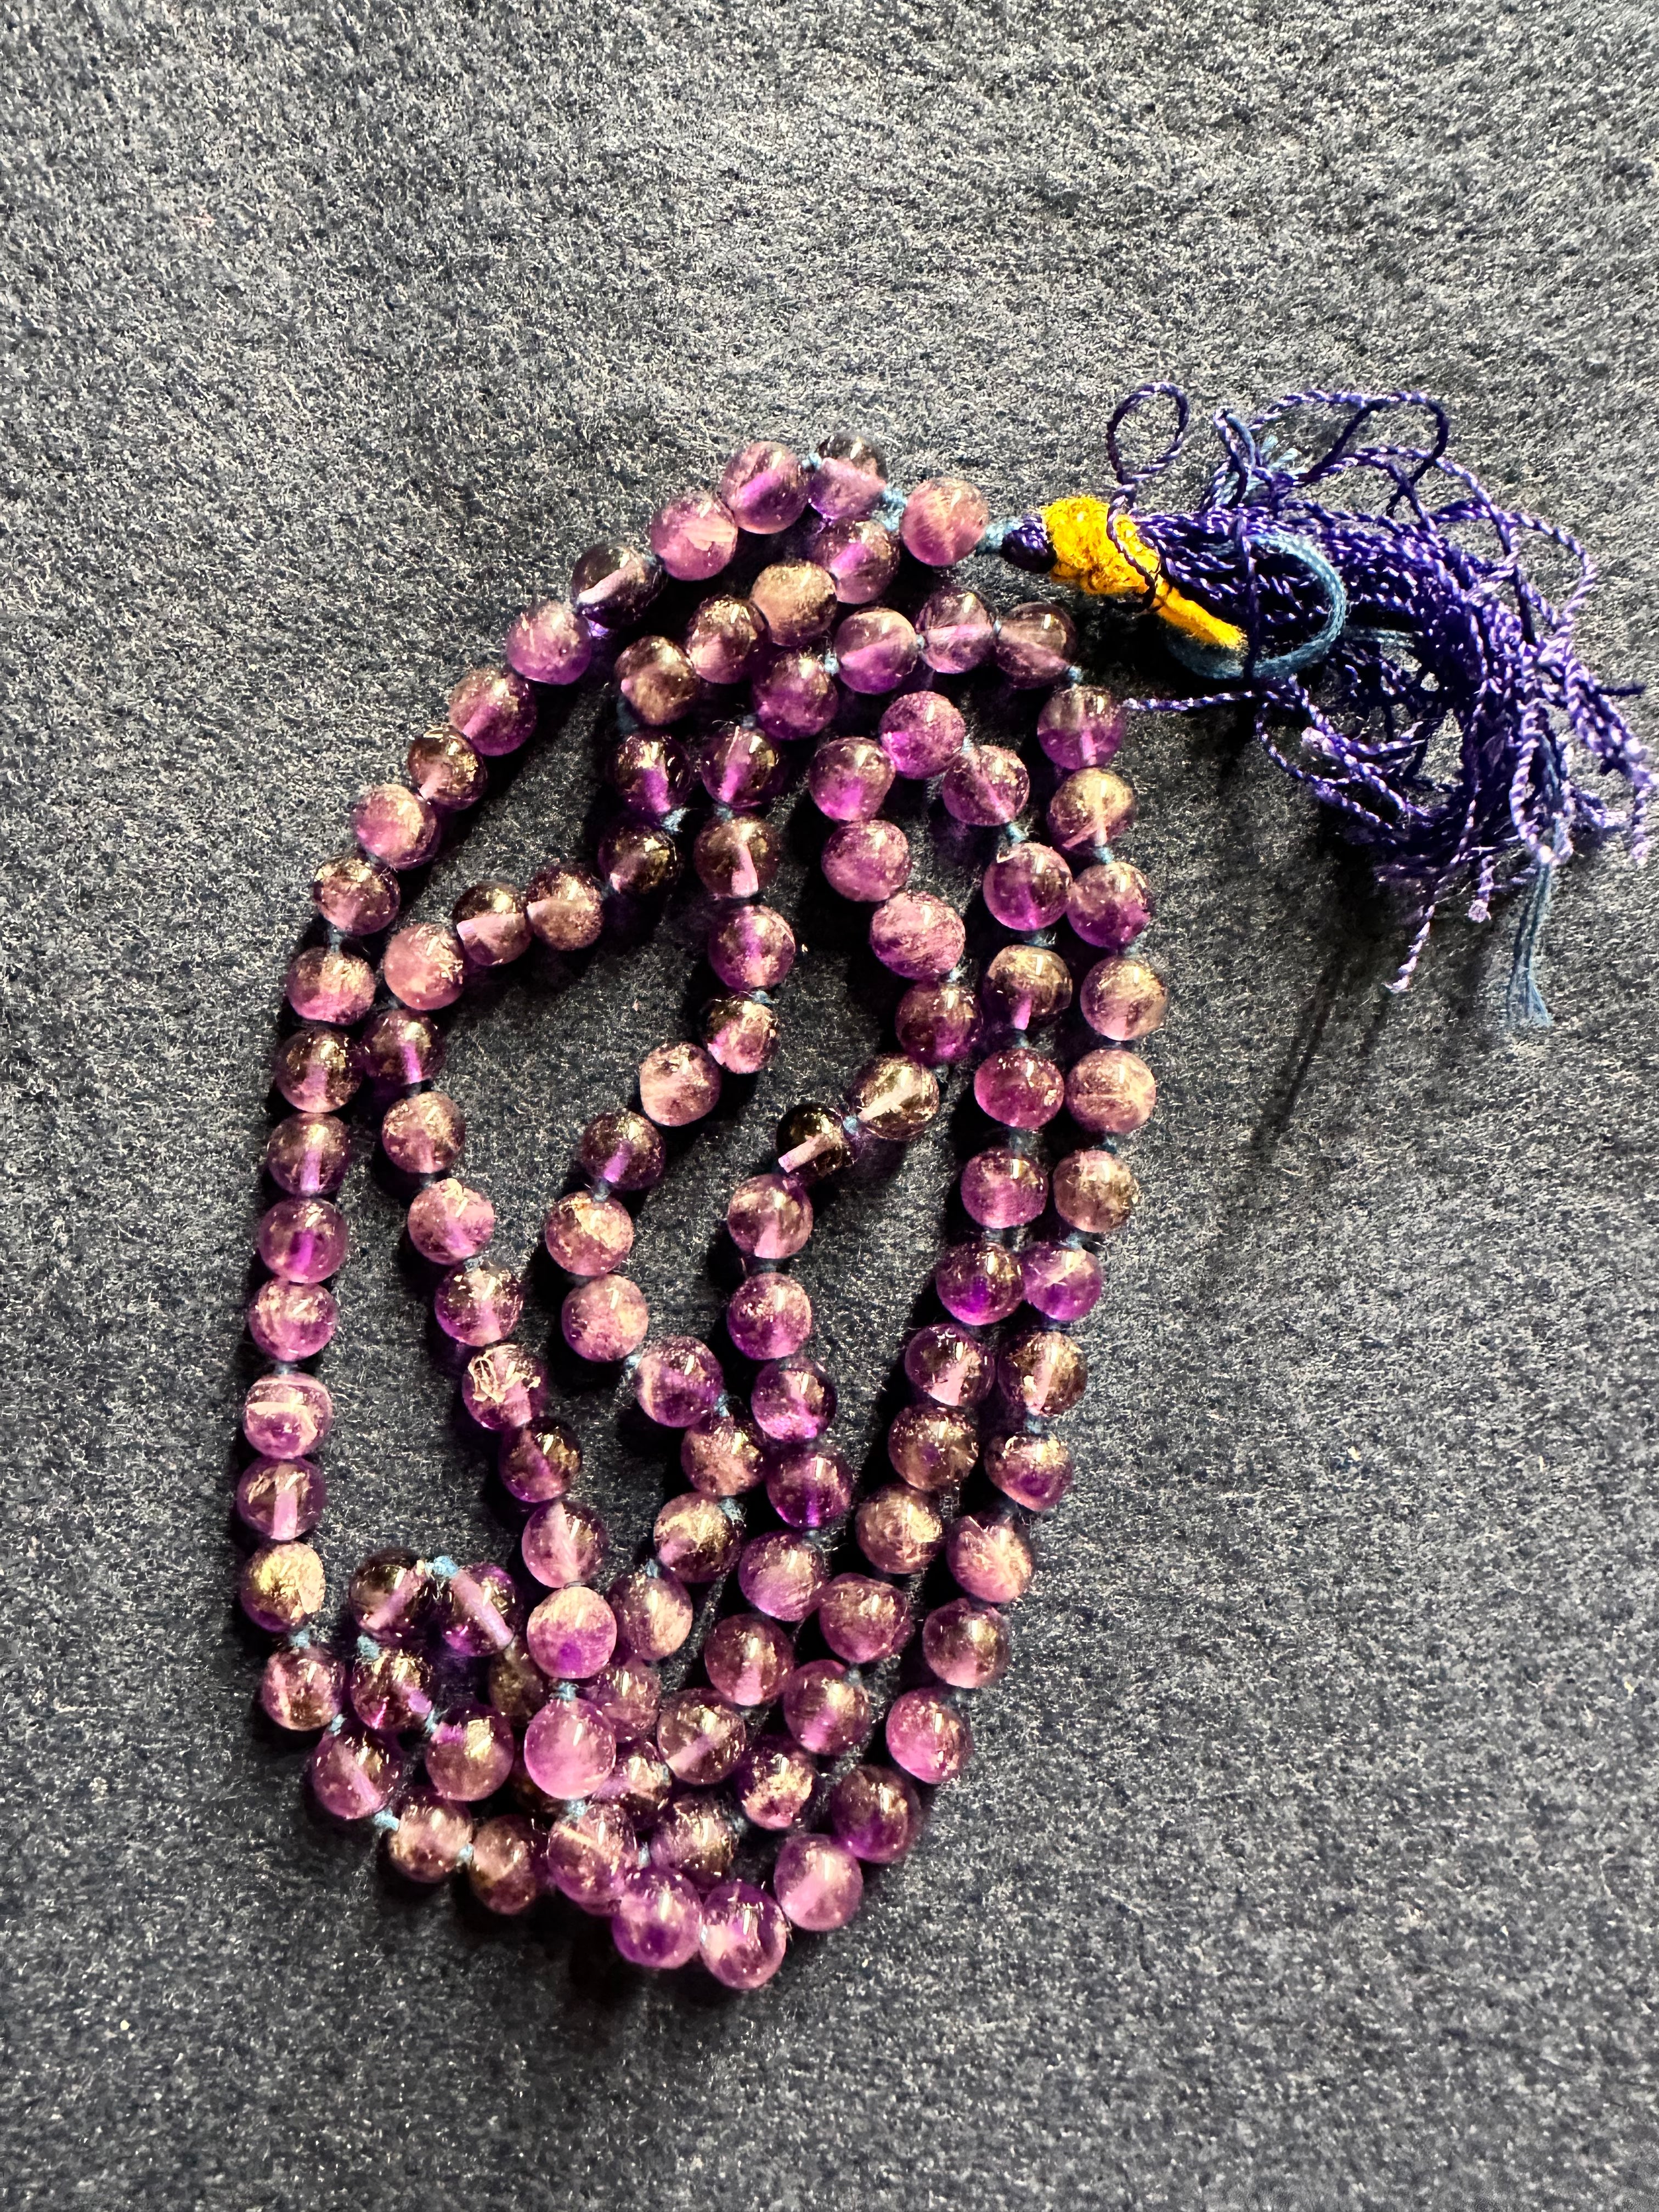 Sandalwood Mala (108 Beads on Cotton Thread) - The Amma Store